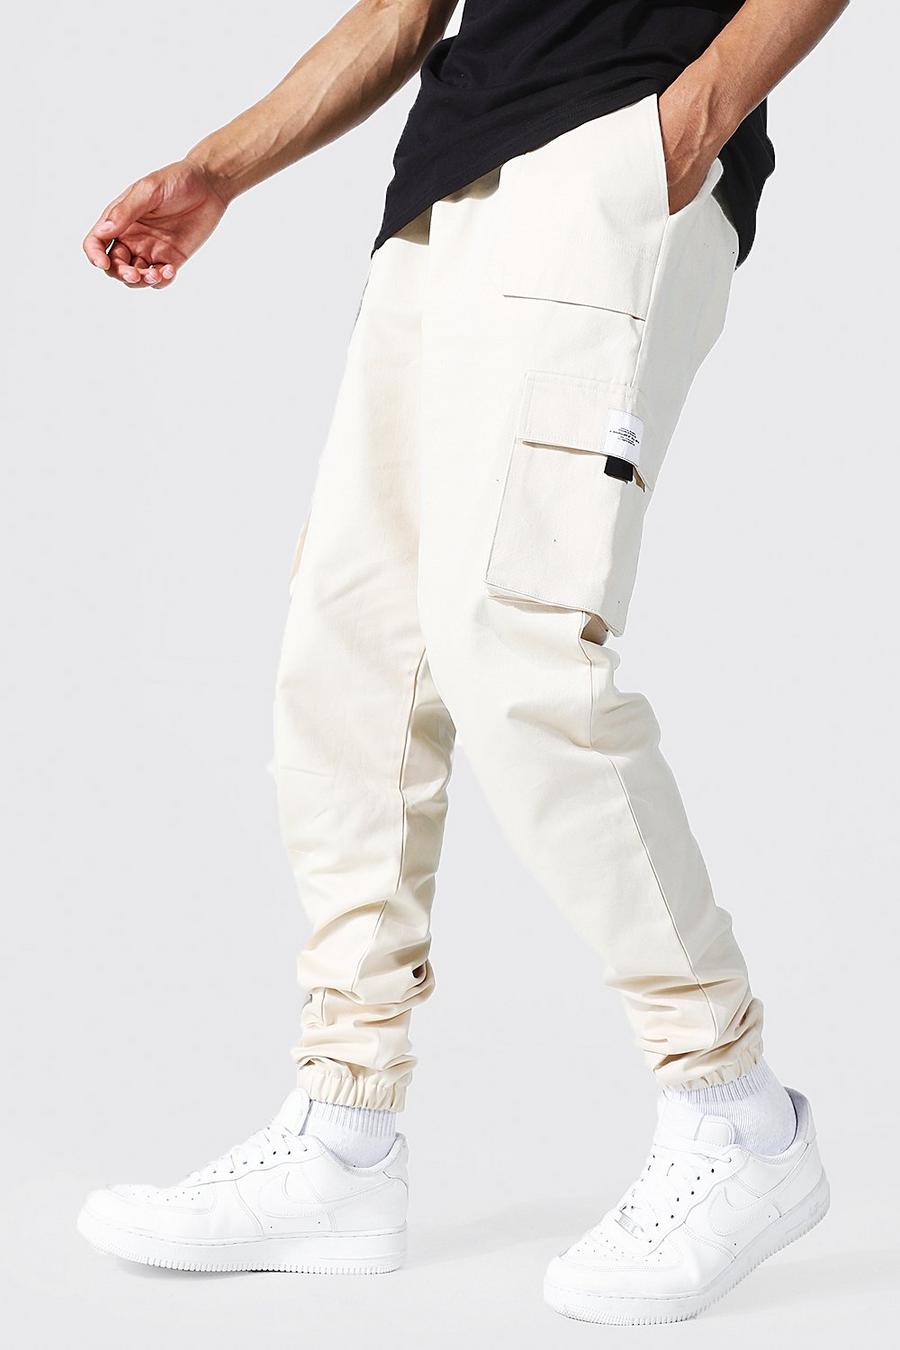 Pantaloni tuta Tall stile Cargo in twill con etichetta e cintura, Ecru white